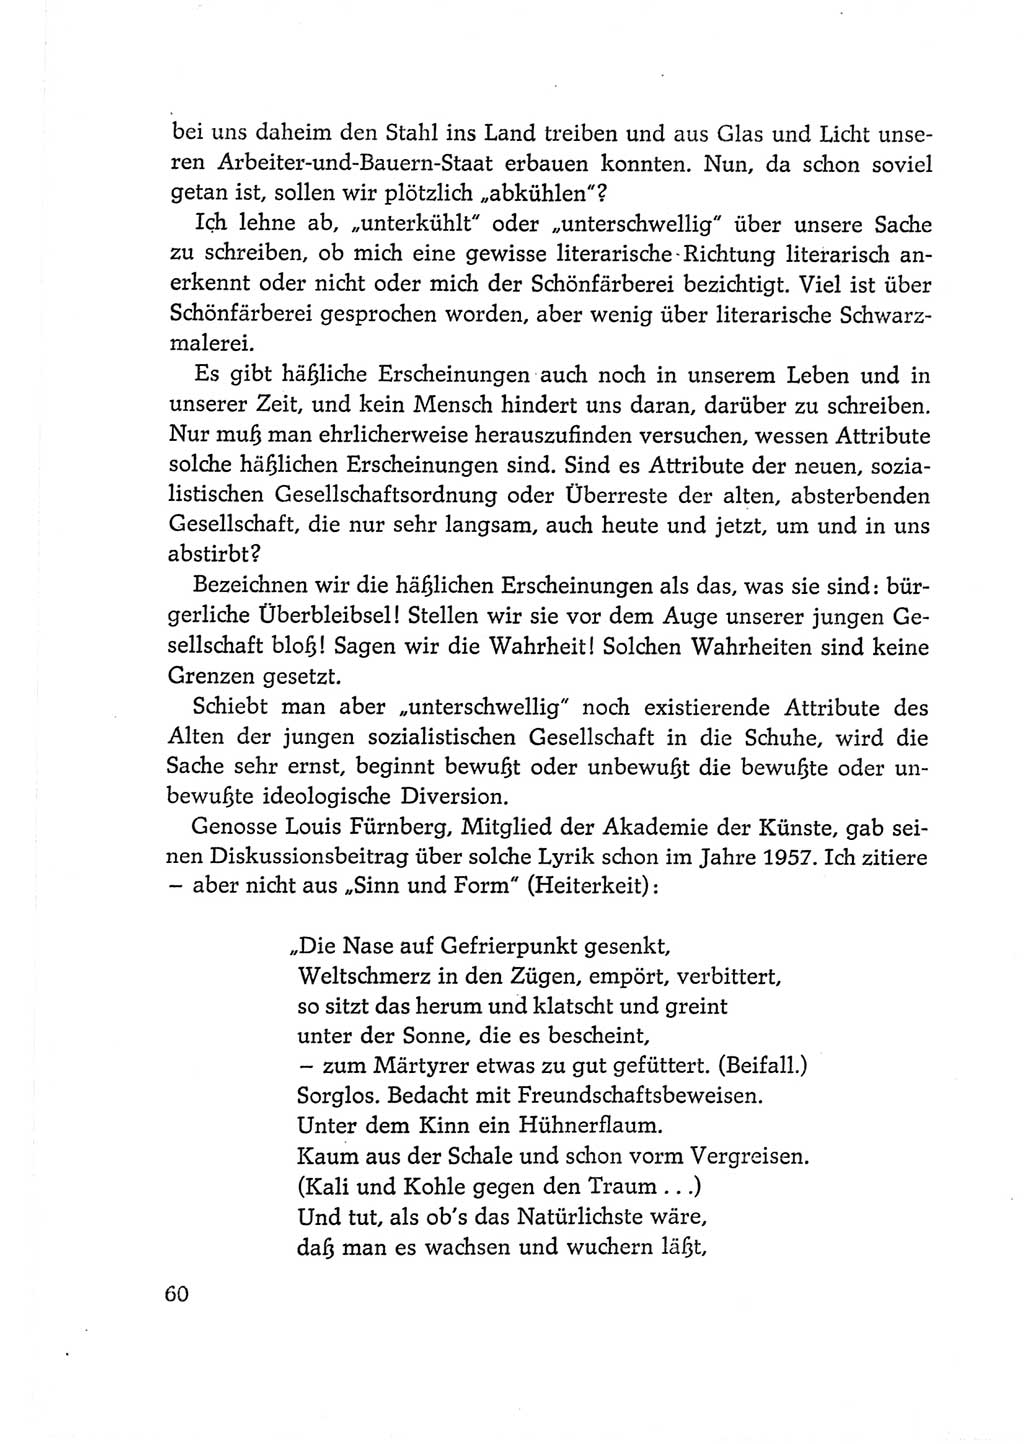 Protokoll der Verhandlungen des Ⅵ. Parteitages der Sozialistischen Einheitspartei Deutschlands (SED) [Deutsche Demokratische Republik (DDR)] 1963, Band Ⅱ, Seite 60 (Prot. Verh. Ⅵ. PT SED DDR 1963, Bd. Ⅱ, S. 60)